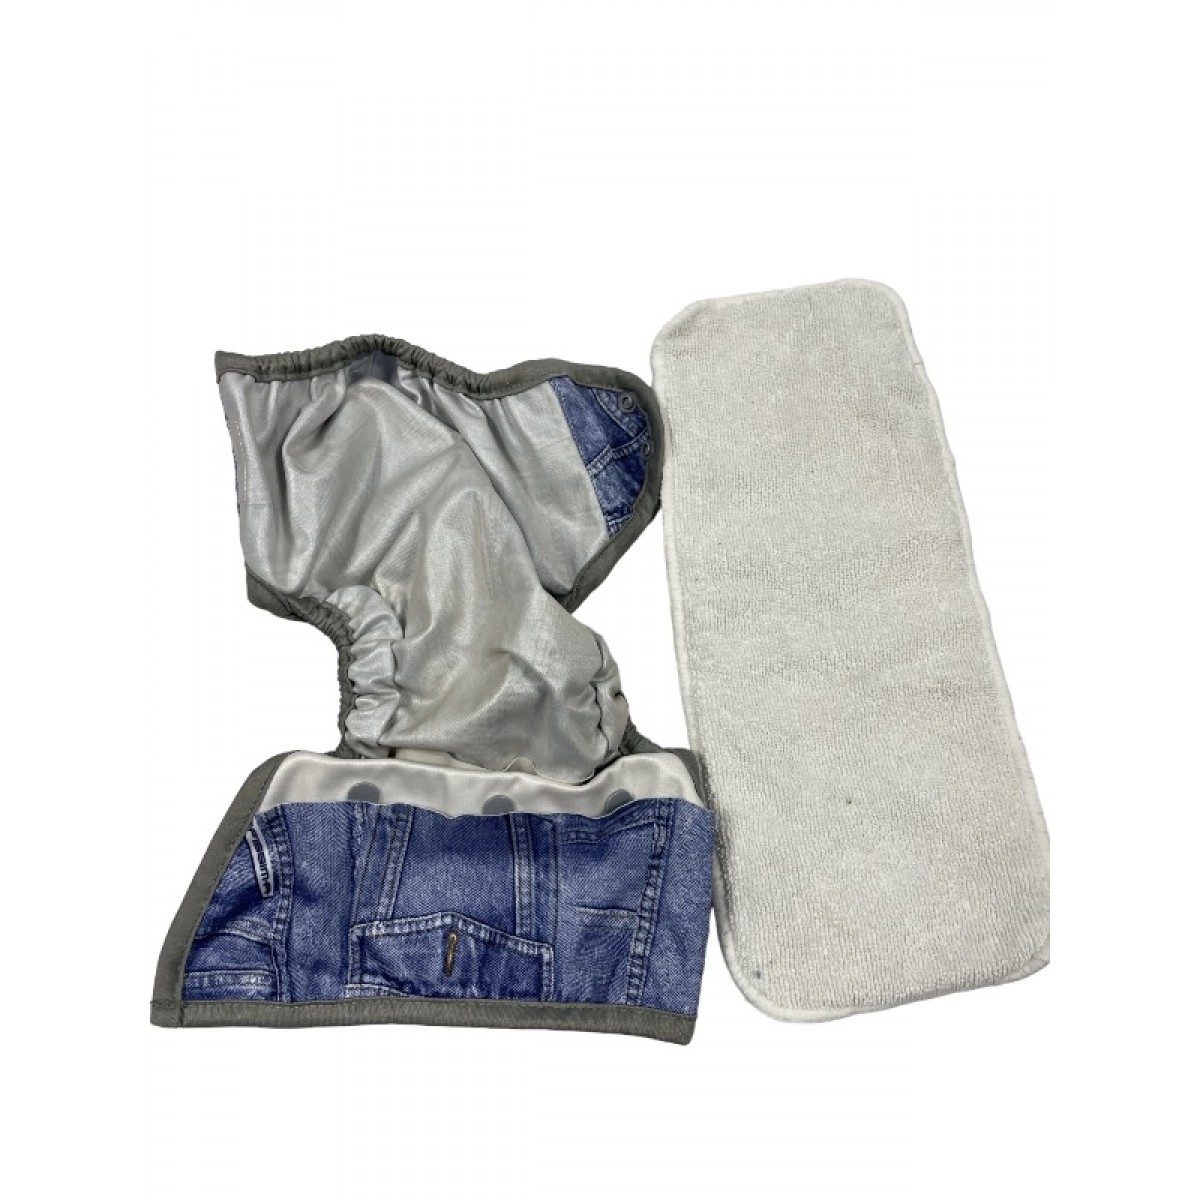 couche lavable jeans / ajustable